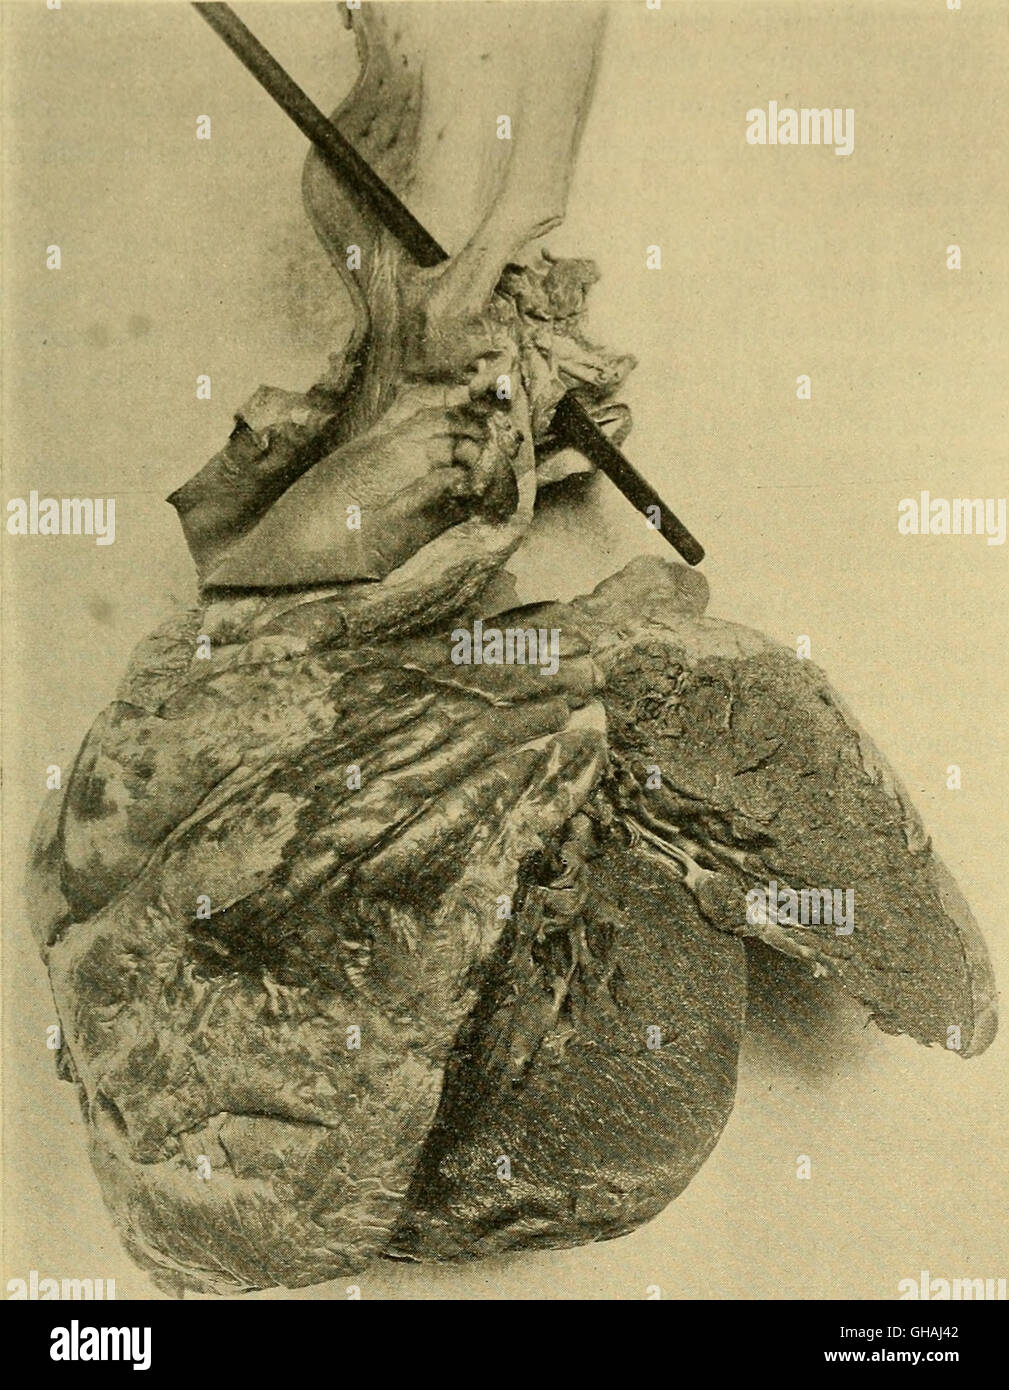 Les maladies du cœur et du système artériel - conçu pour être une présentation de l'objet à l'usage des étudiants et praticiens de médecine (1907) Banque D'Images